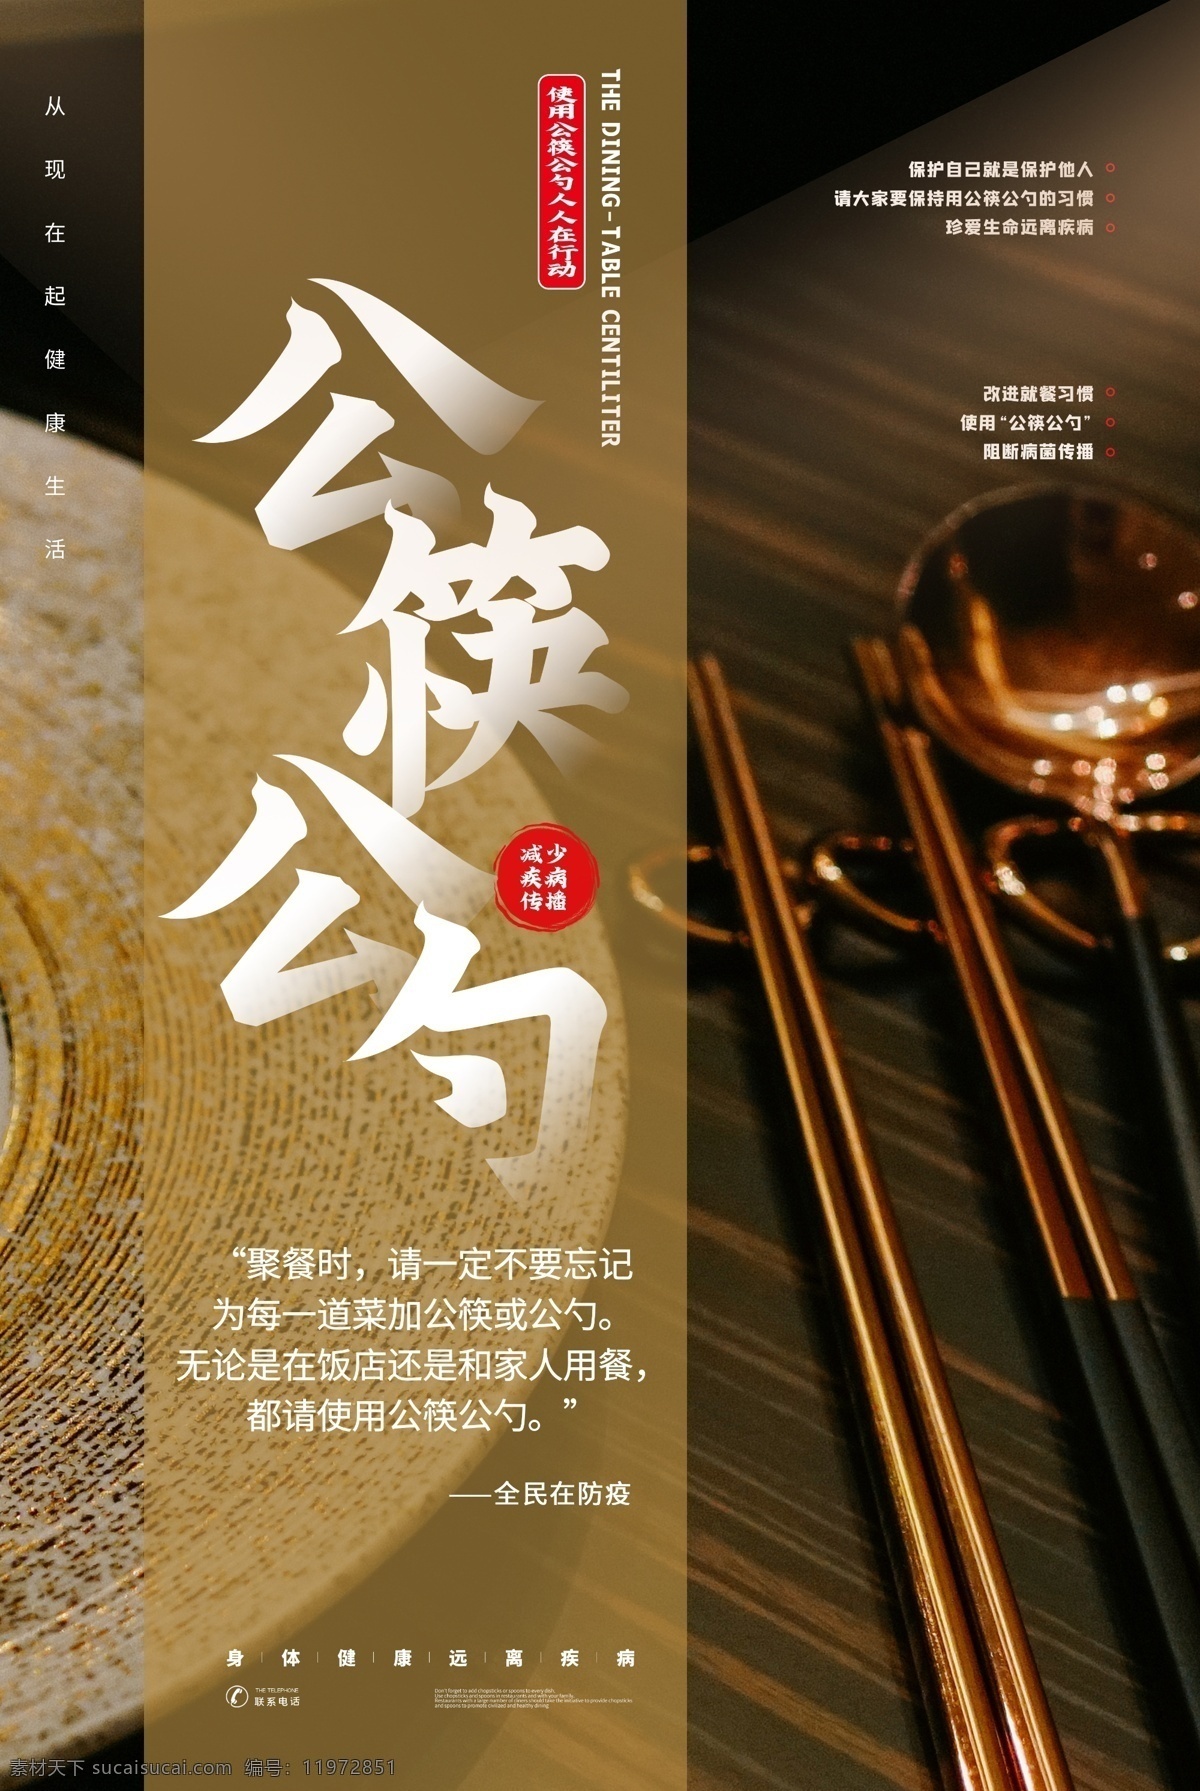 公 筷 勺 公益 宣传 卫生 标语 海报 公筷 公勺